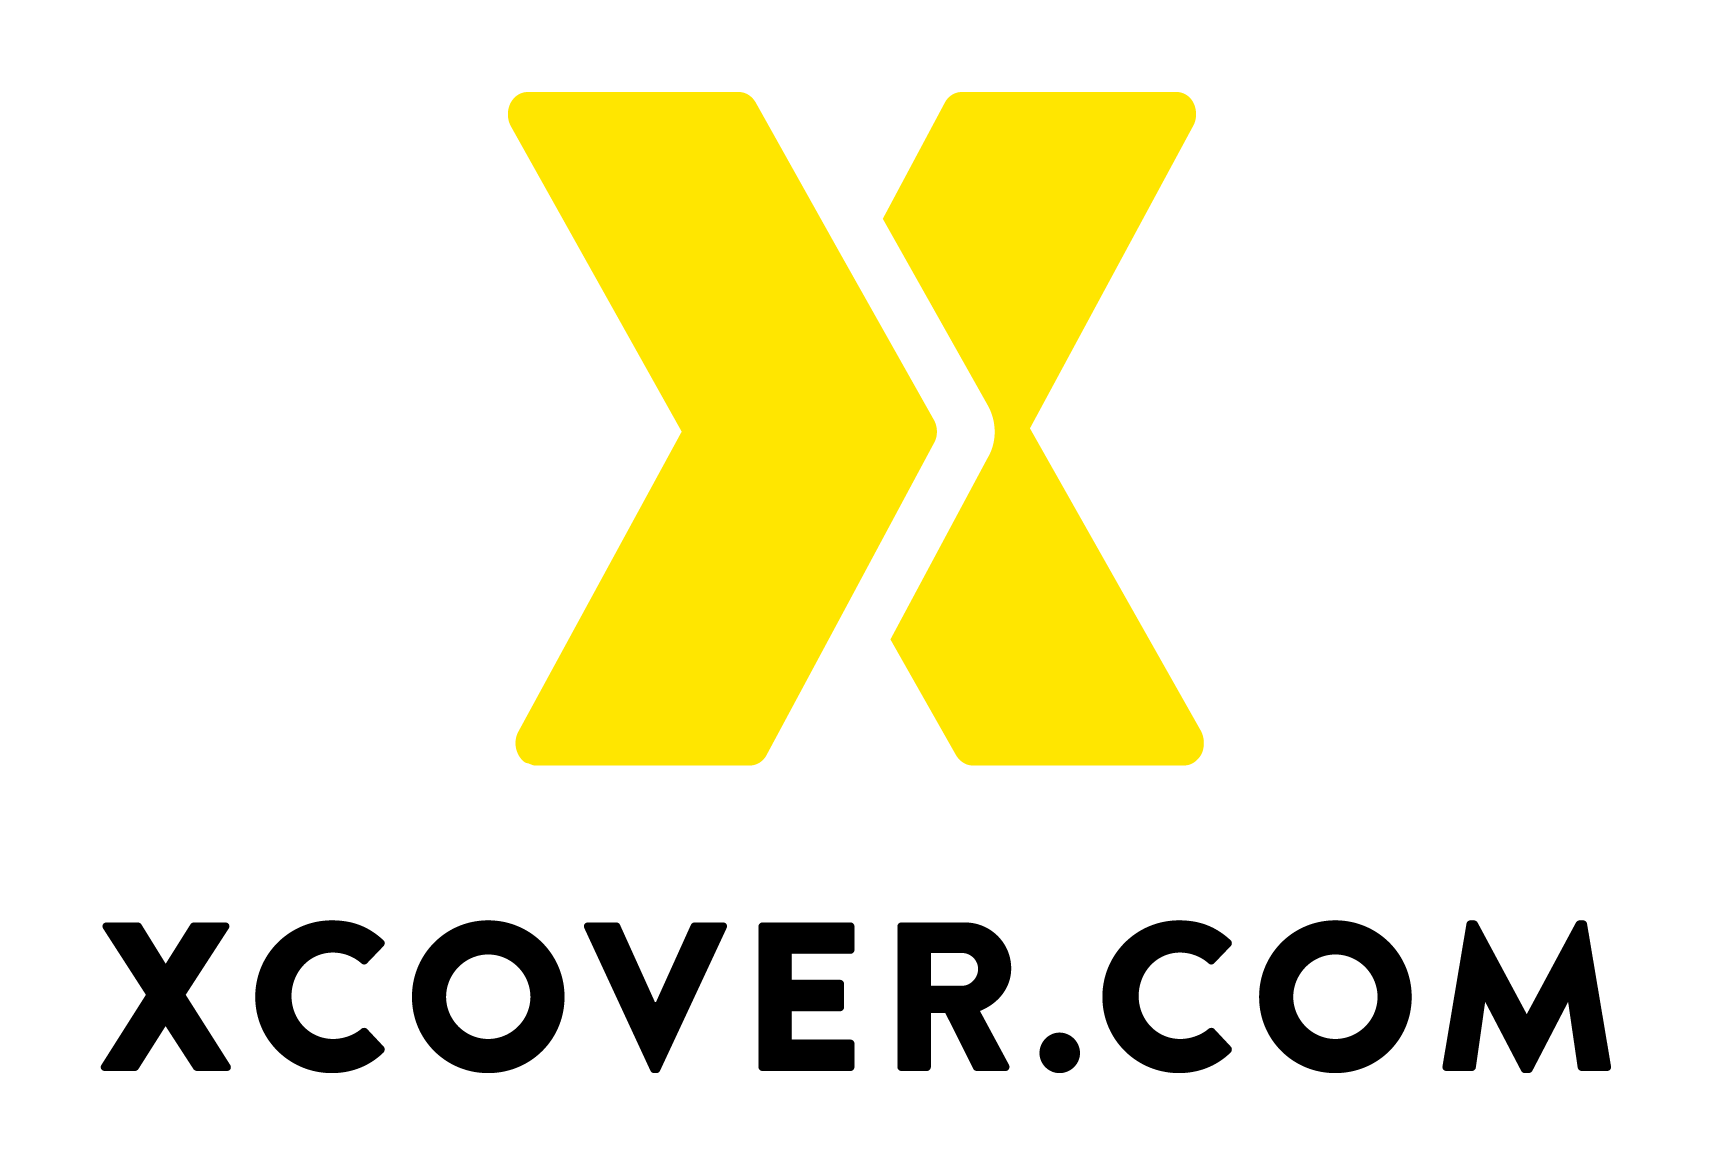 xcover.com travel insurance